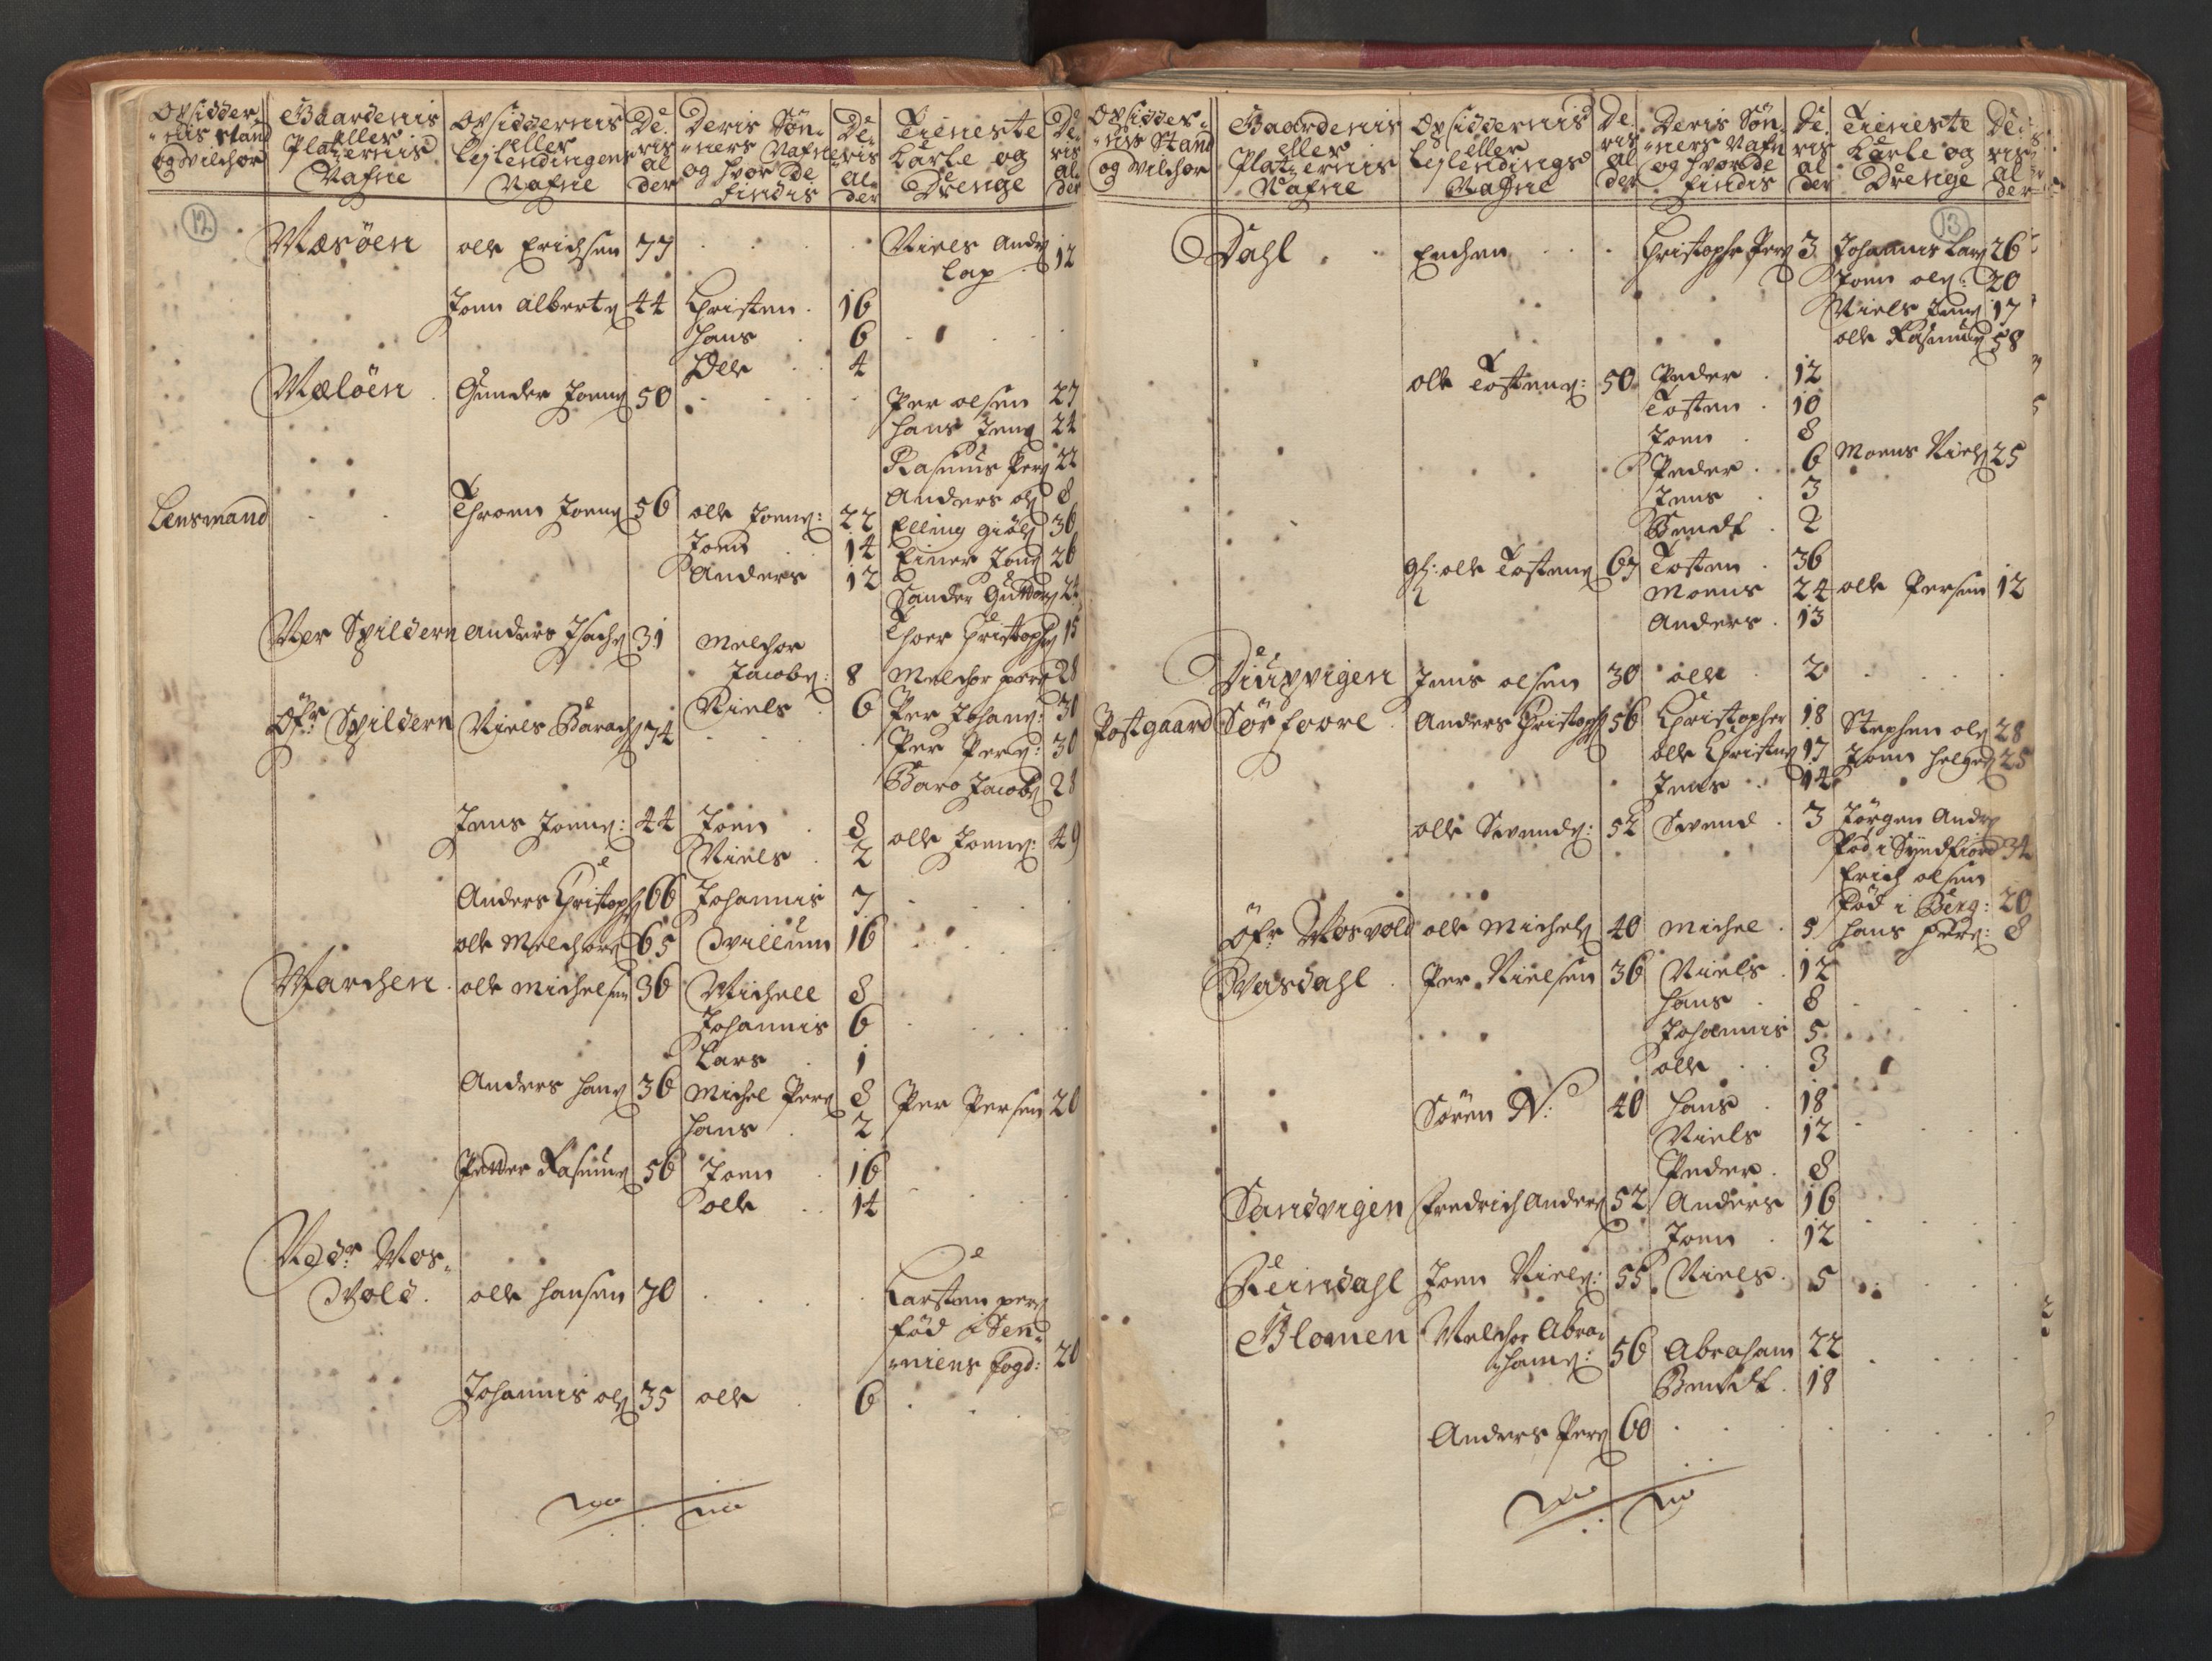 RA, Manntallet 1701, nr. 16: Helgeland fogderi, 1701, s. 12-13